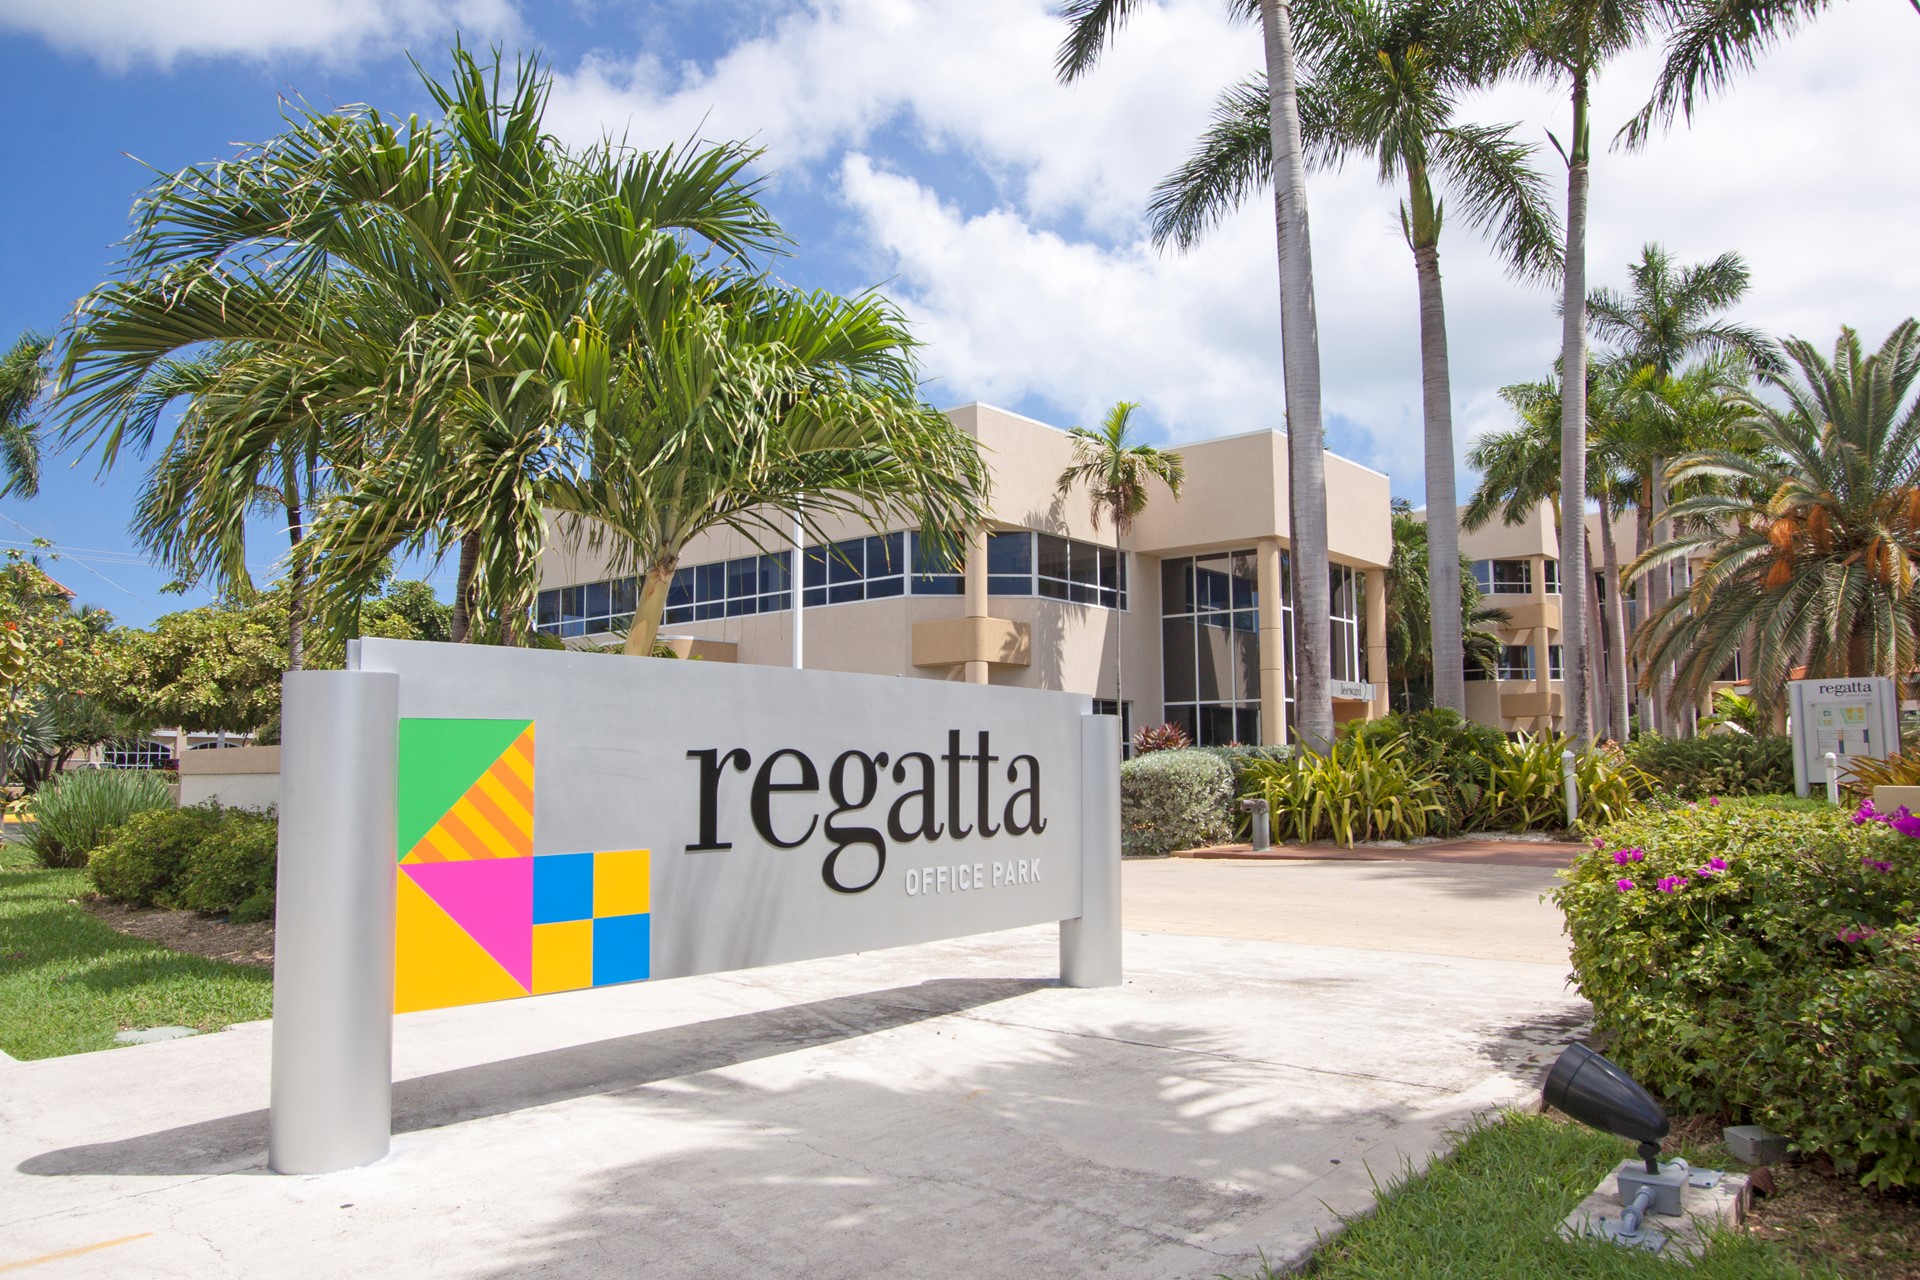 Regatta Office Park